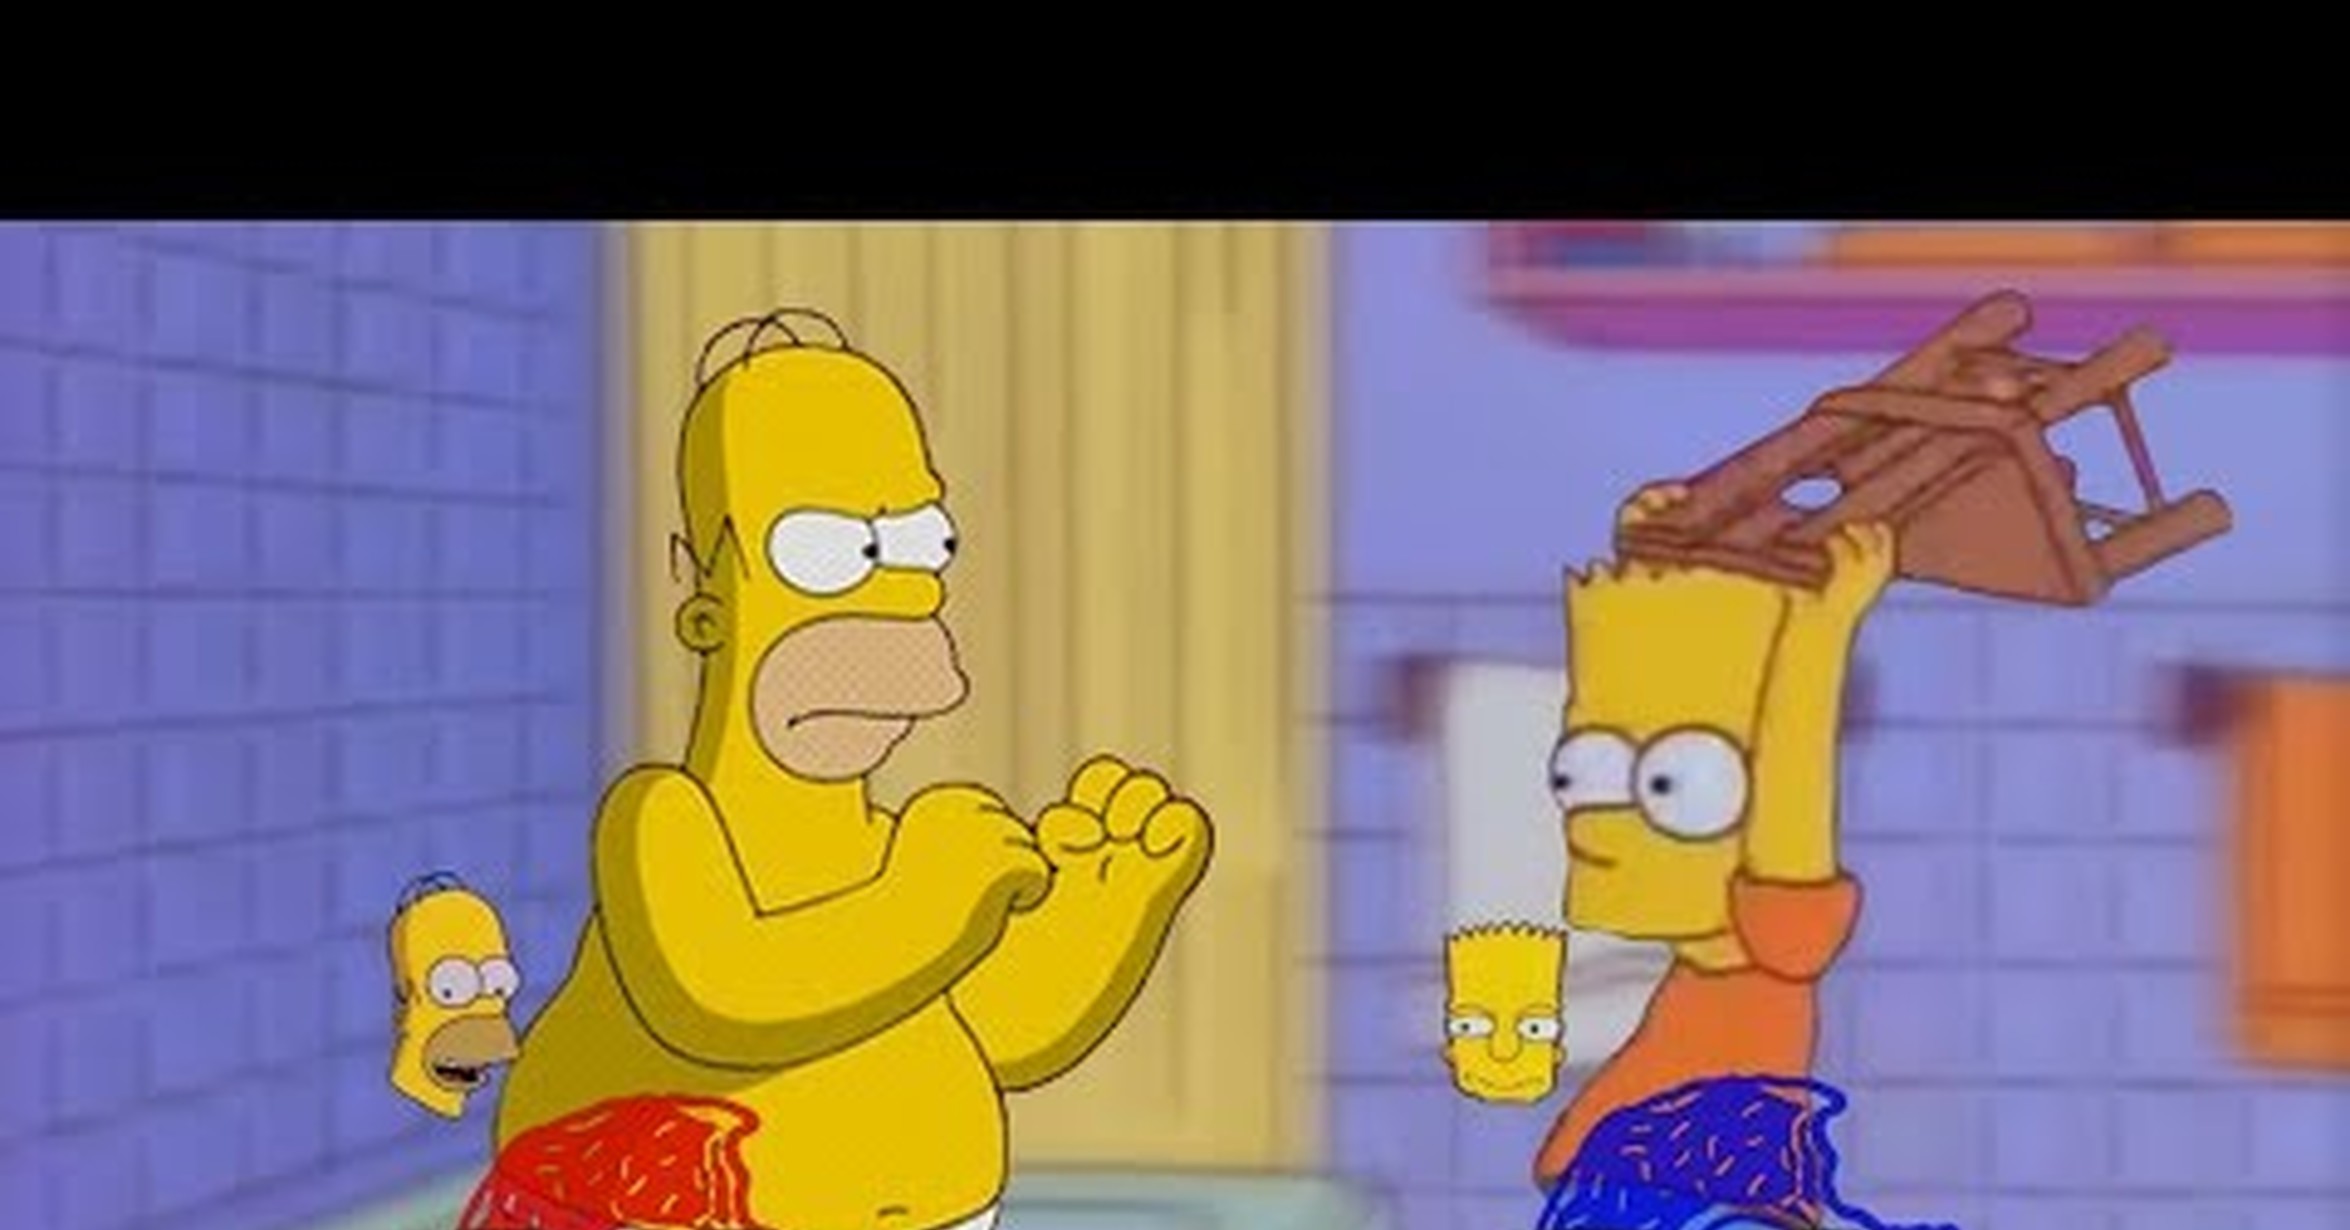 conjunción Prueba Muñeco de peluche VRUTAL / Bart golpea a Homer(o) con una silla, pero es Smash Bros.